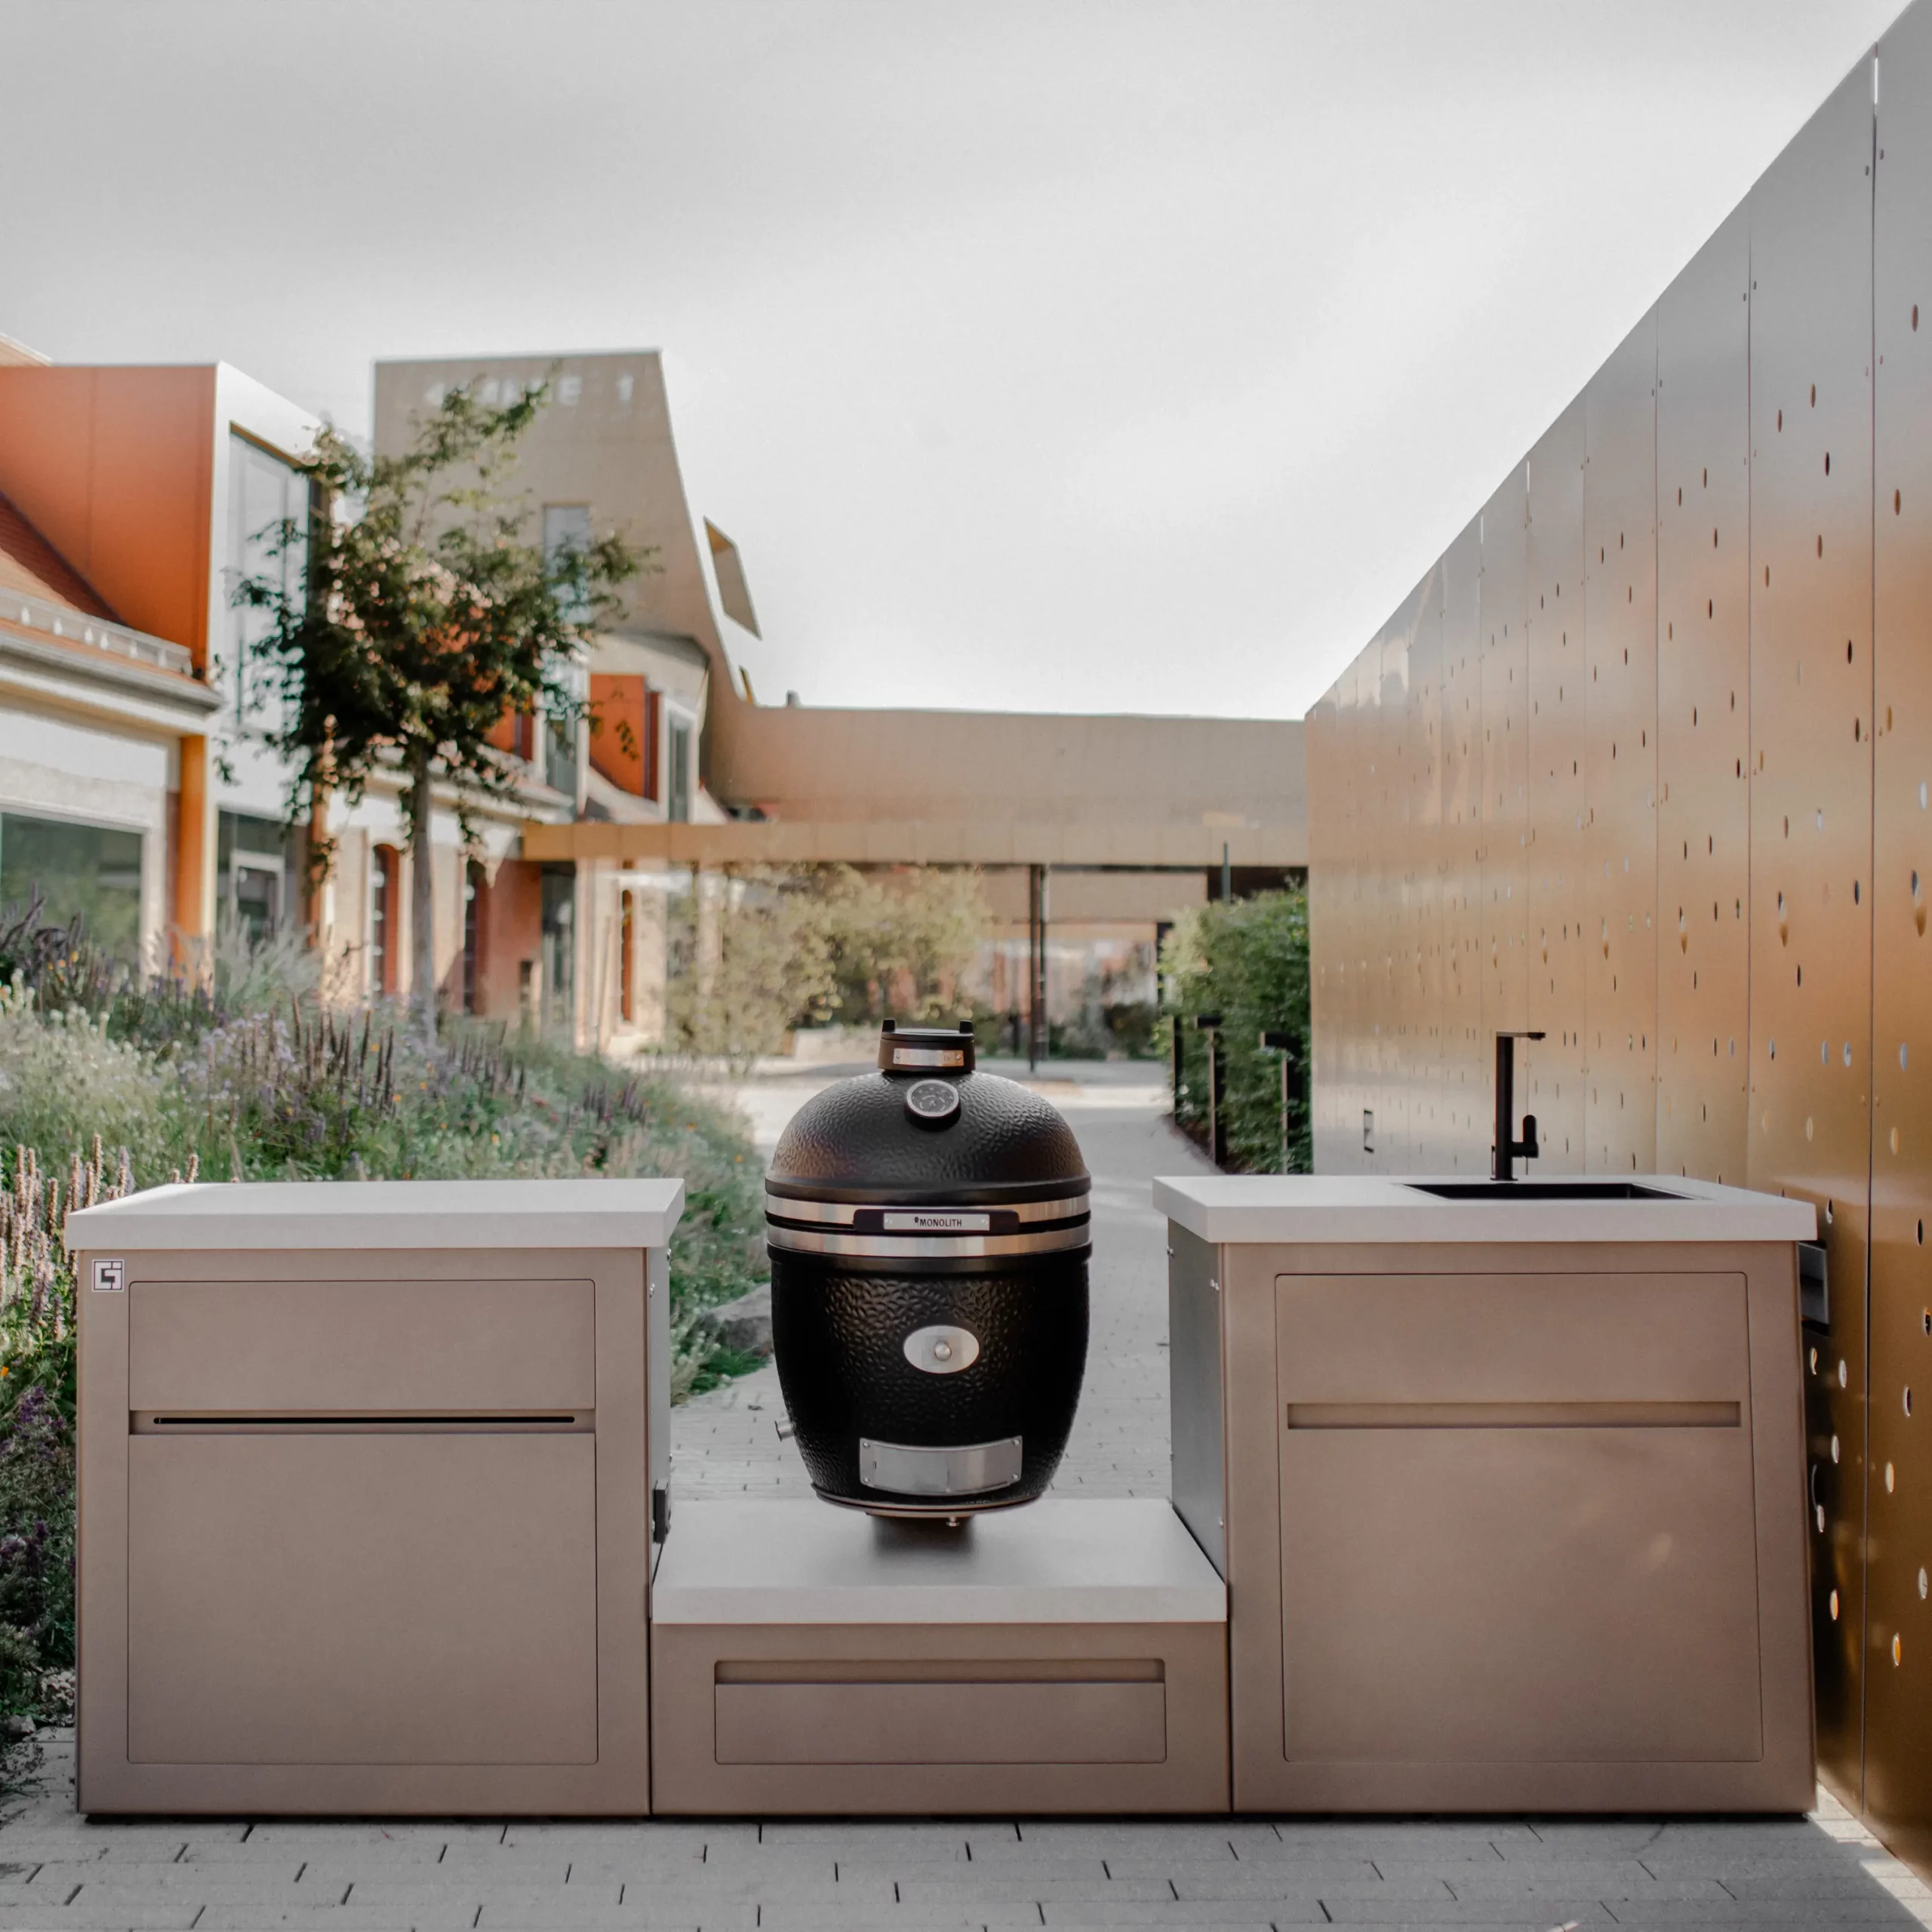 Grillzimmer Outdoorküche mit einem Monolith und Waschbecken